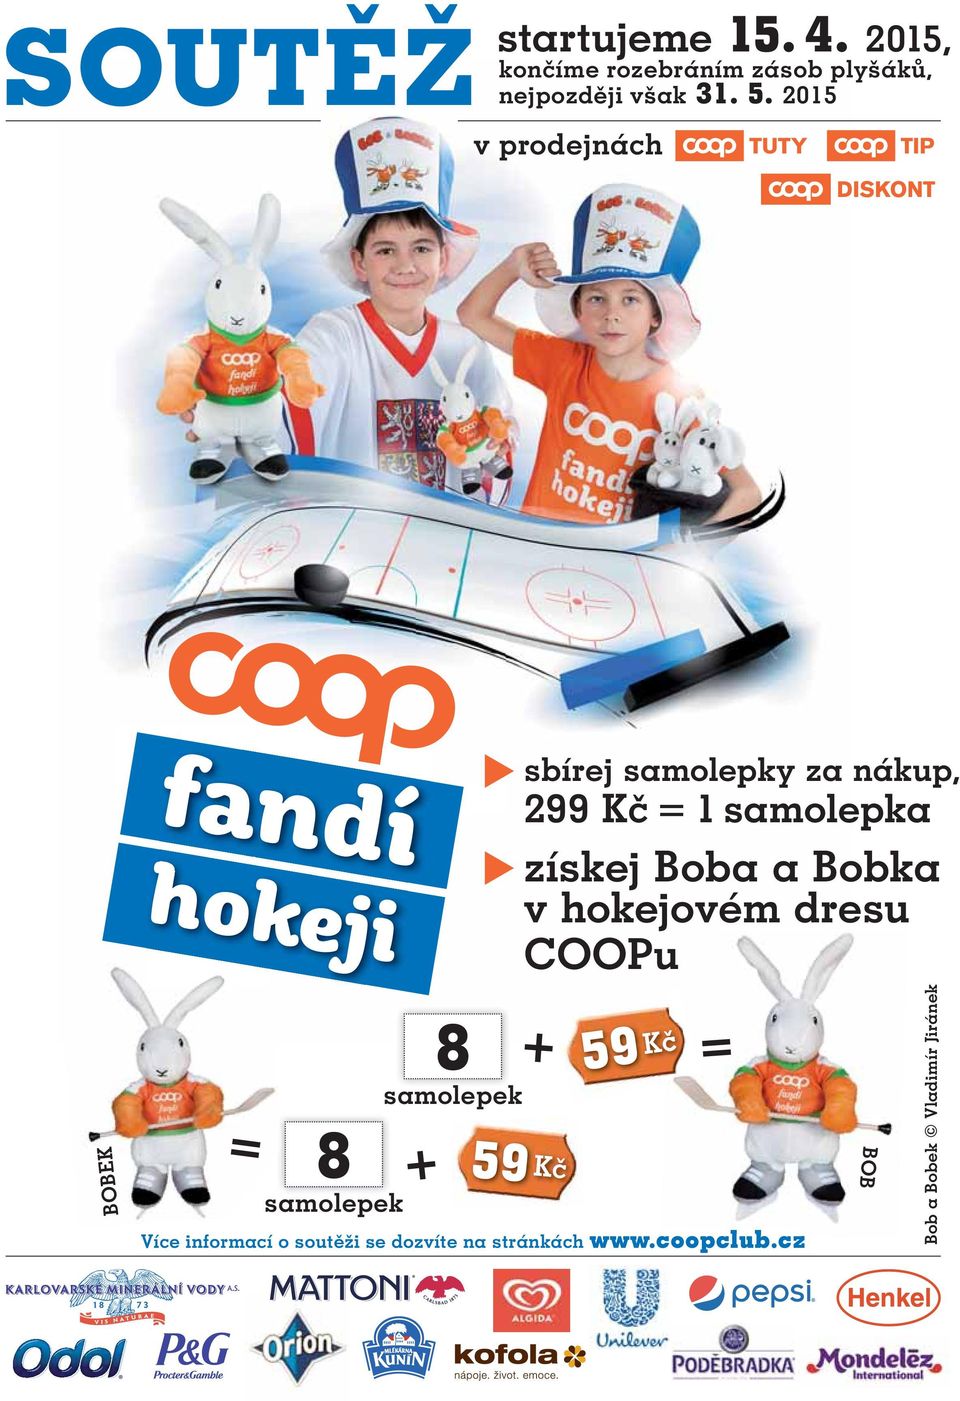 2015 v prodejnách BOBEK fandí hokeji = 8 samolepek 8 samolepek + sbírej samolepky